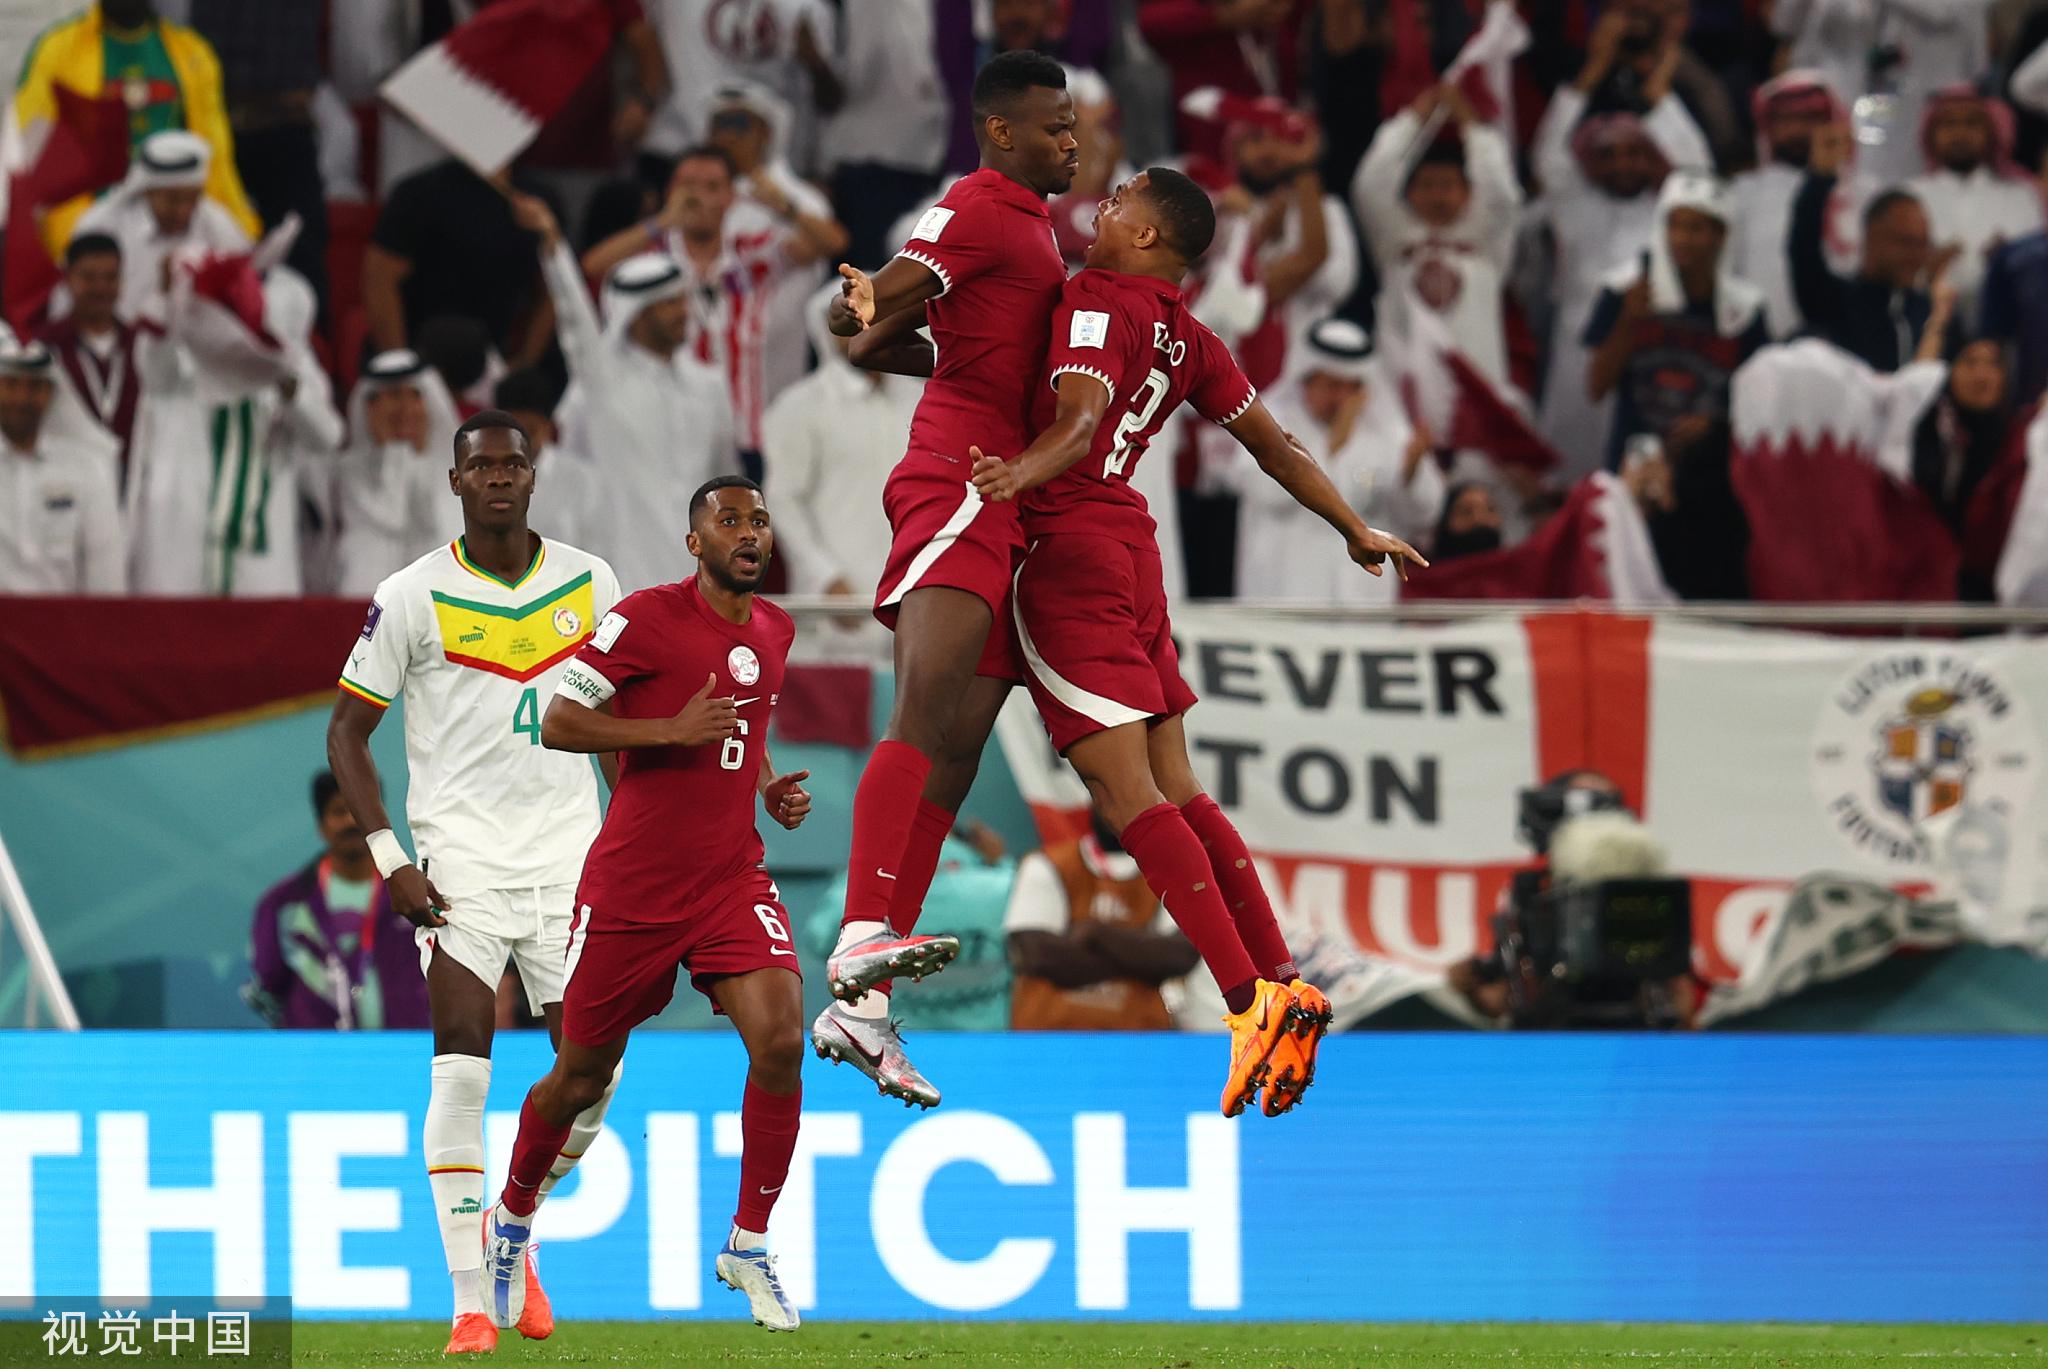 卡塔尔酝酿18年的足球梦 卡塔尔足球崛起